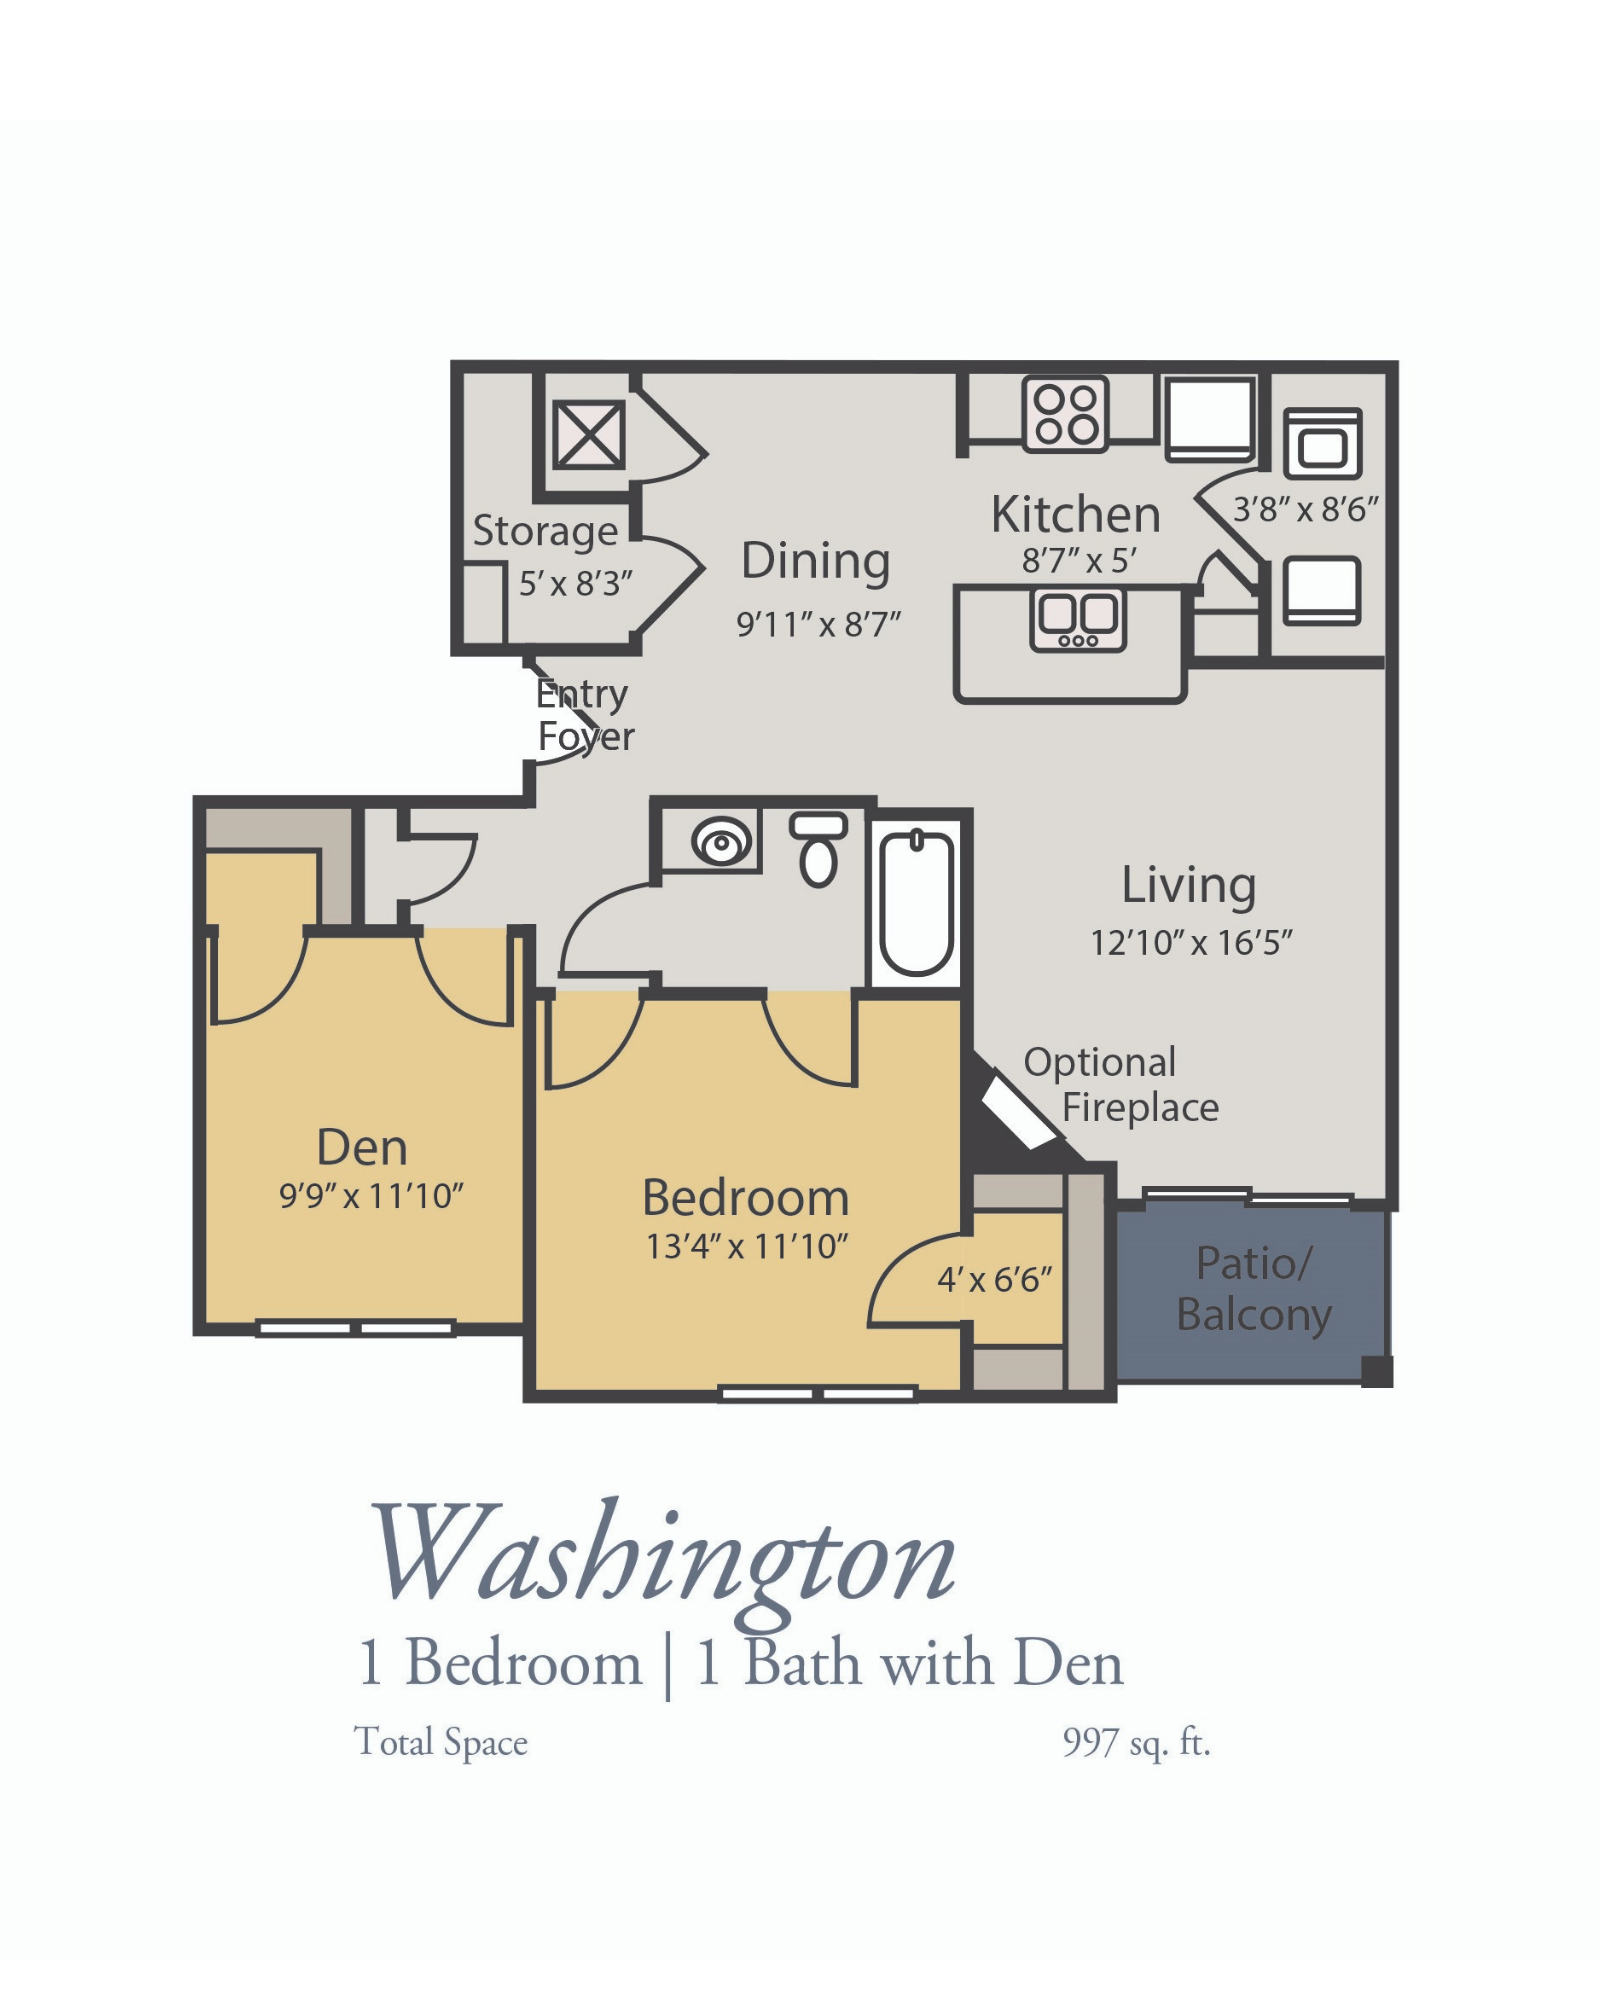 Washington Floor Plan, 1 Bedroom, 1 Bath